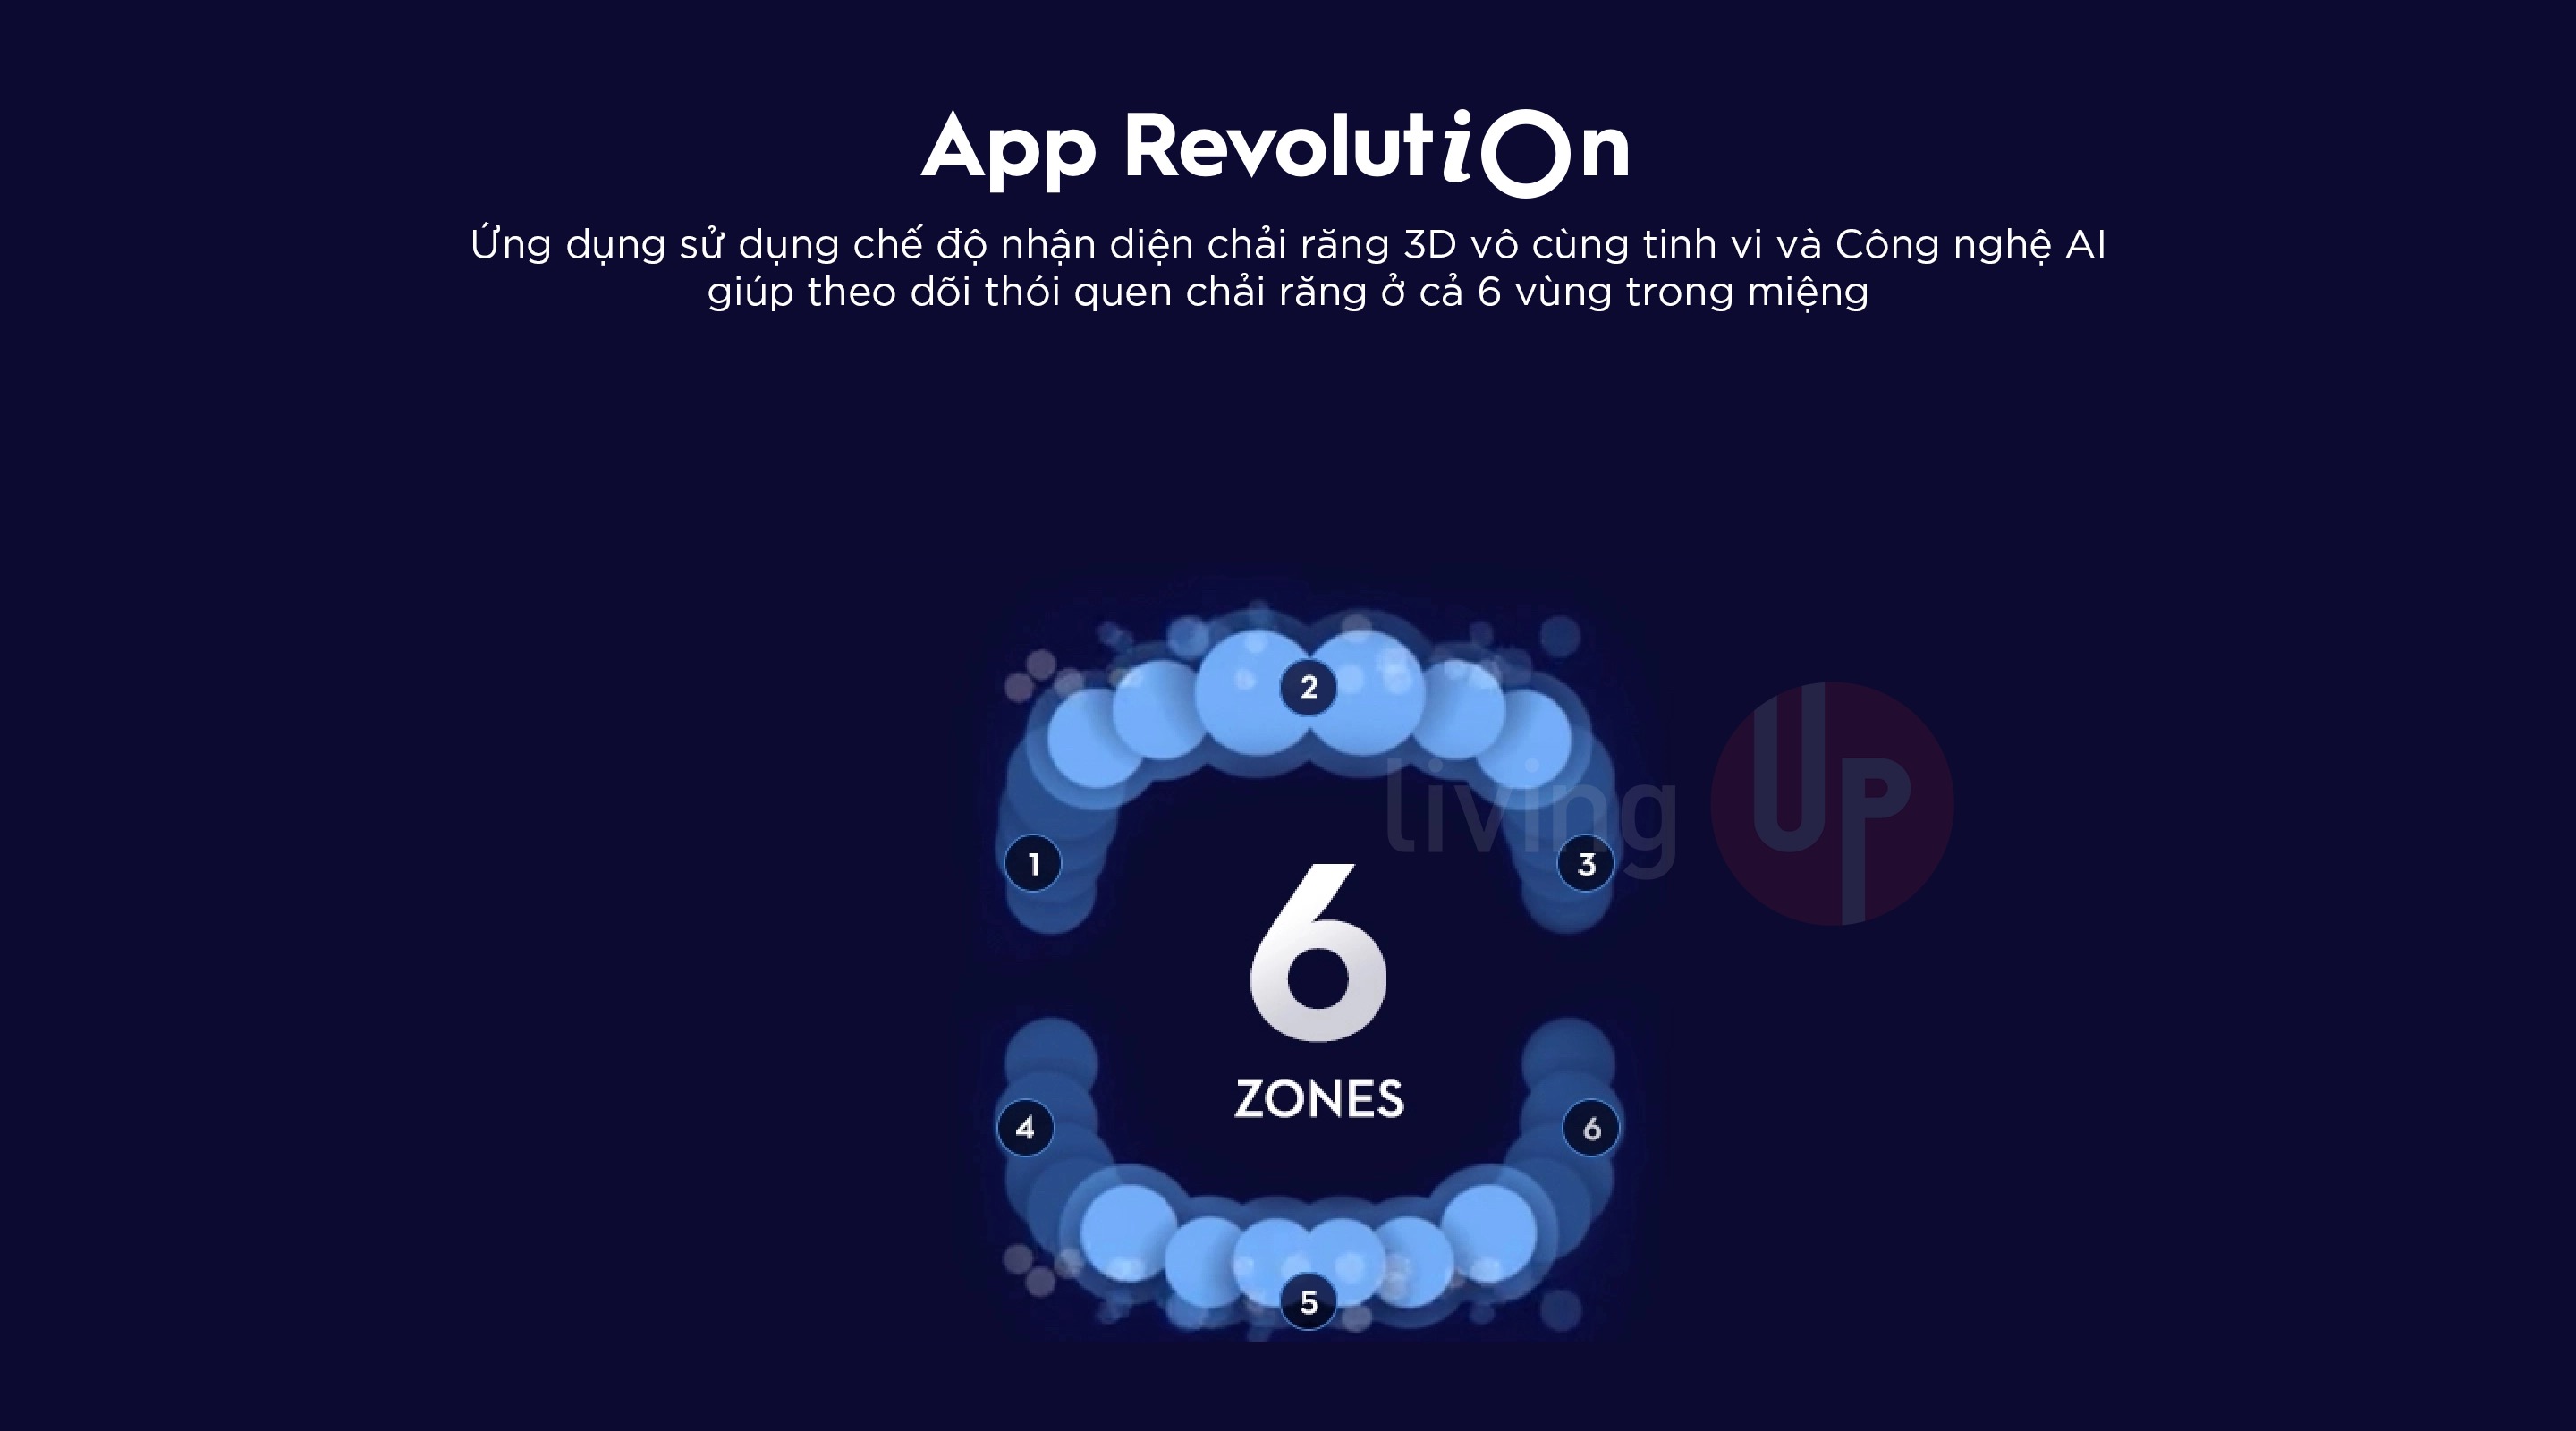 ban chai dien oral-b io series 5 app revolution